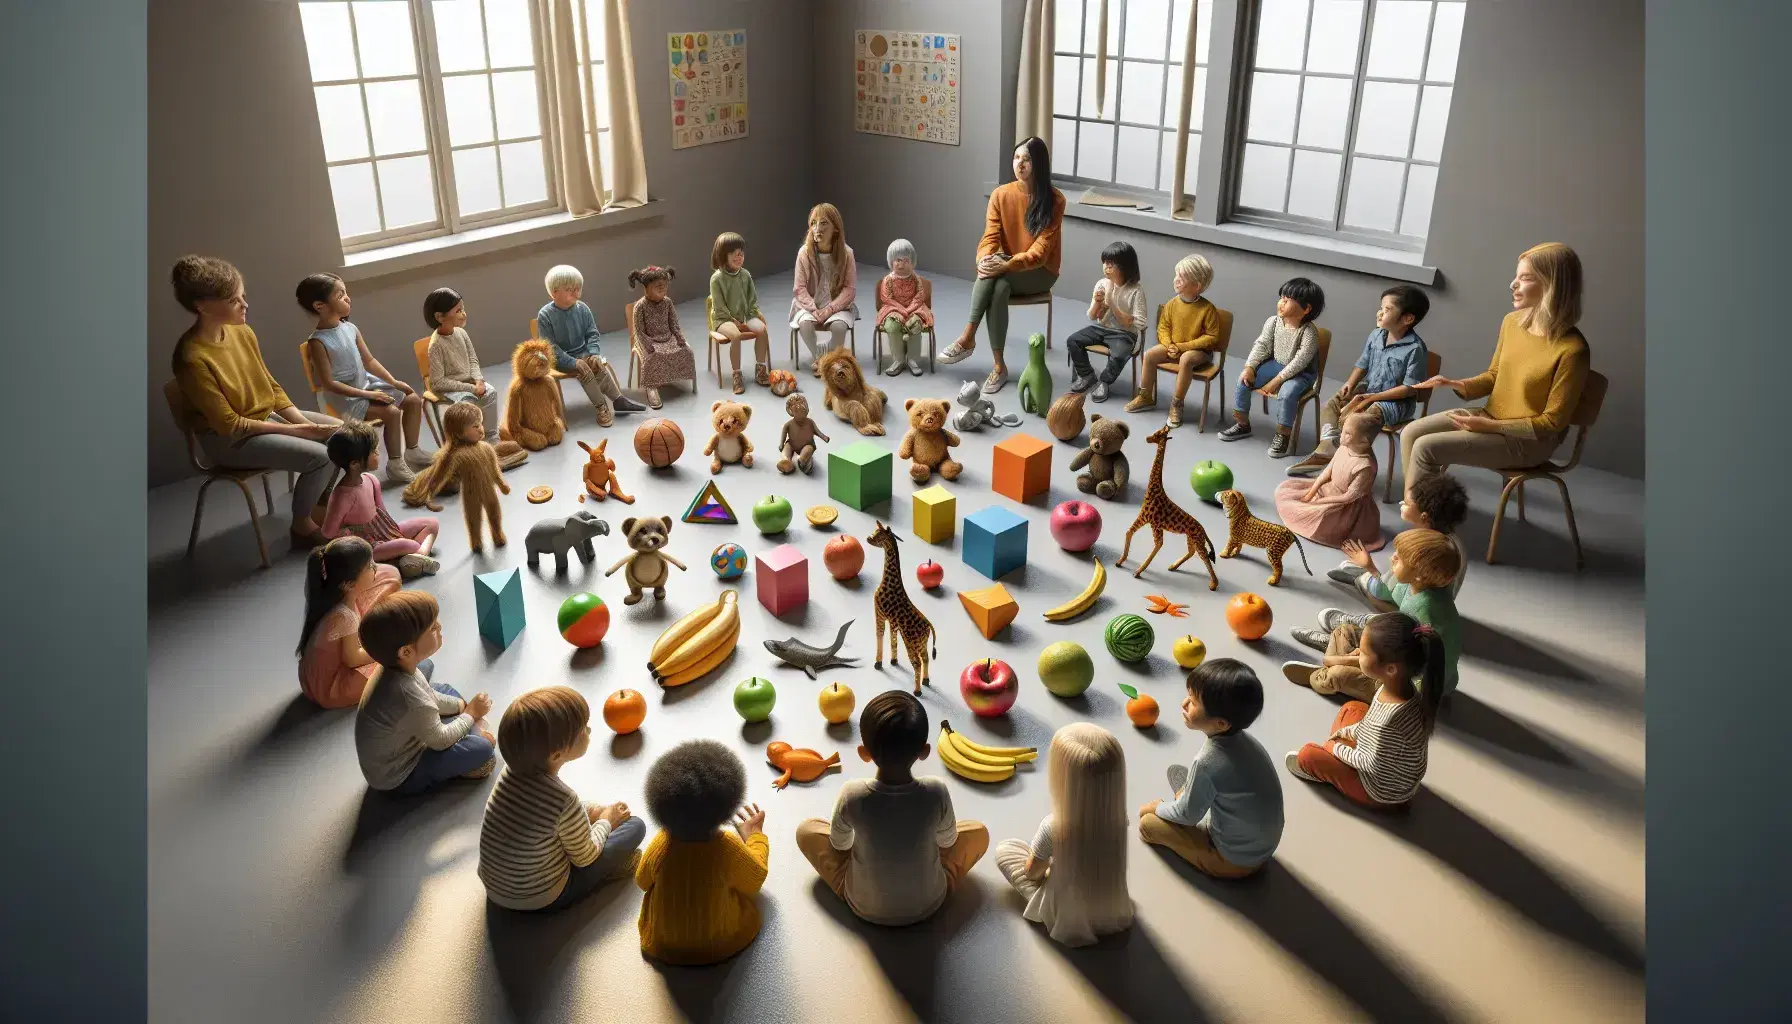 Niños diversos sentados en círculo en un aula con objetos educativos en el centro, incluyendo frutas, figuras geométricas y animales de juguete, con una maestra explicando.